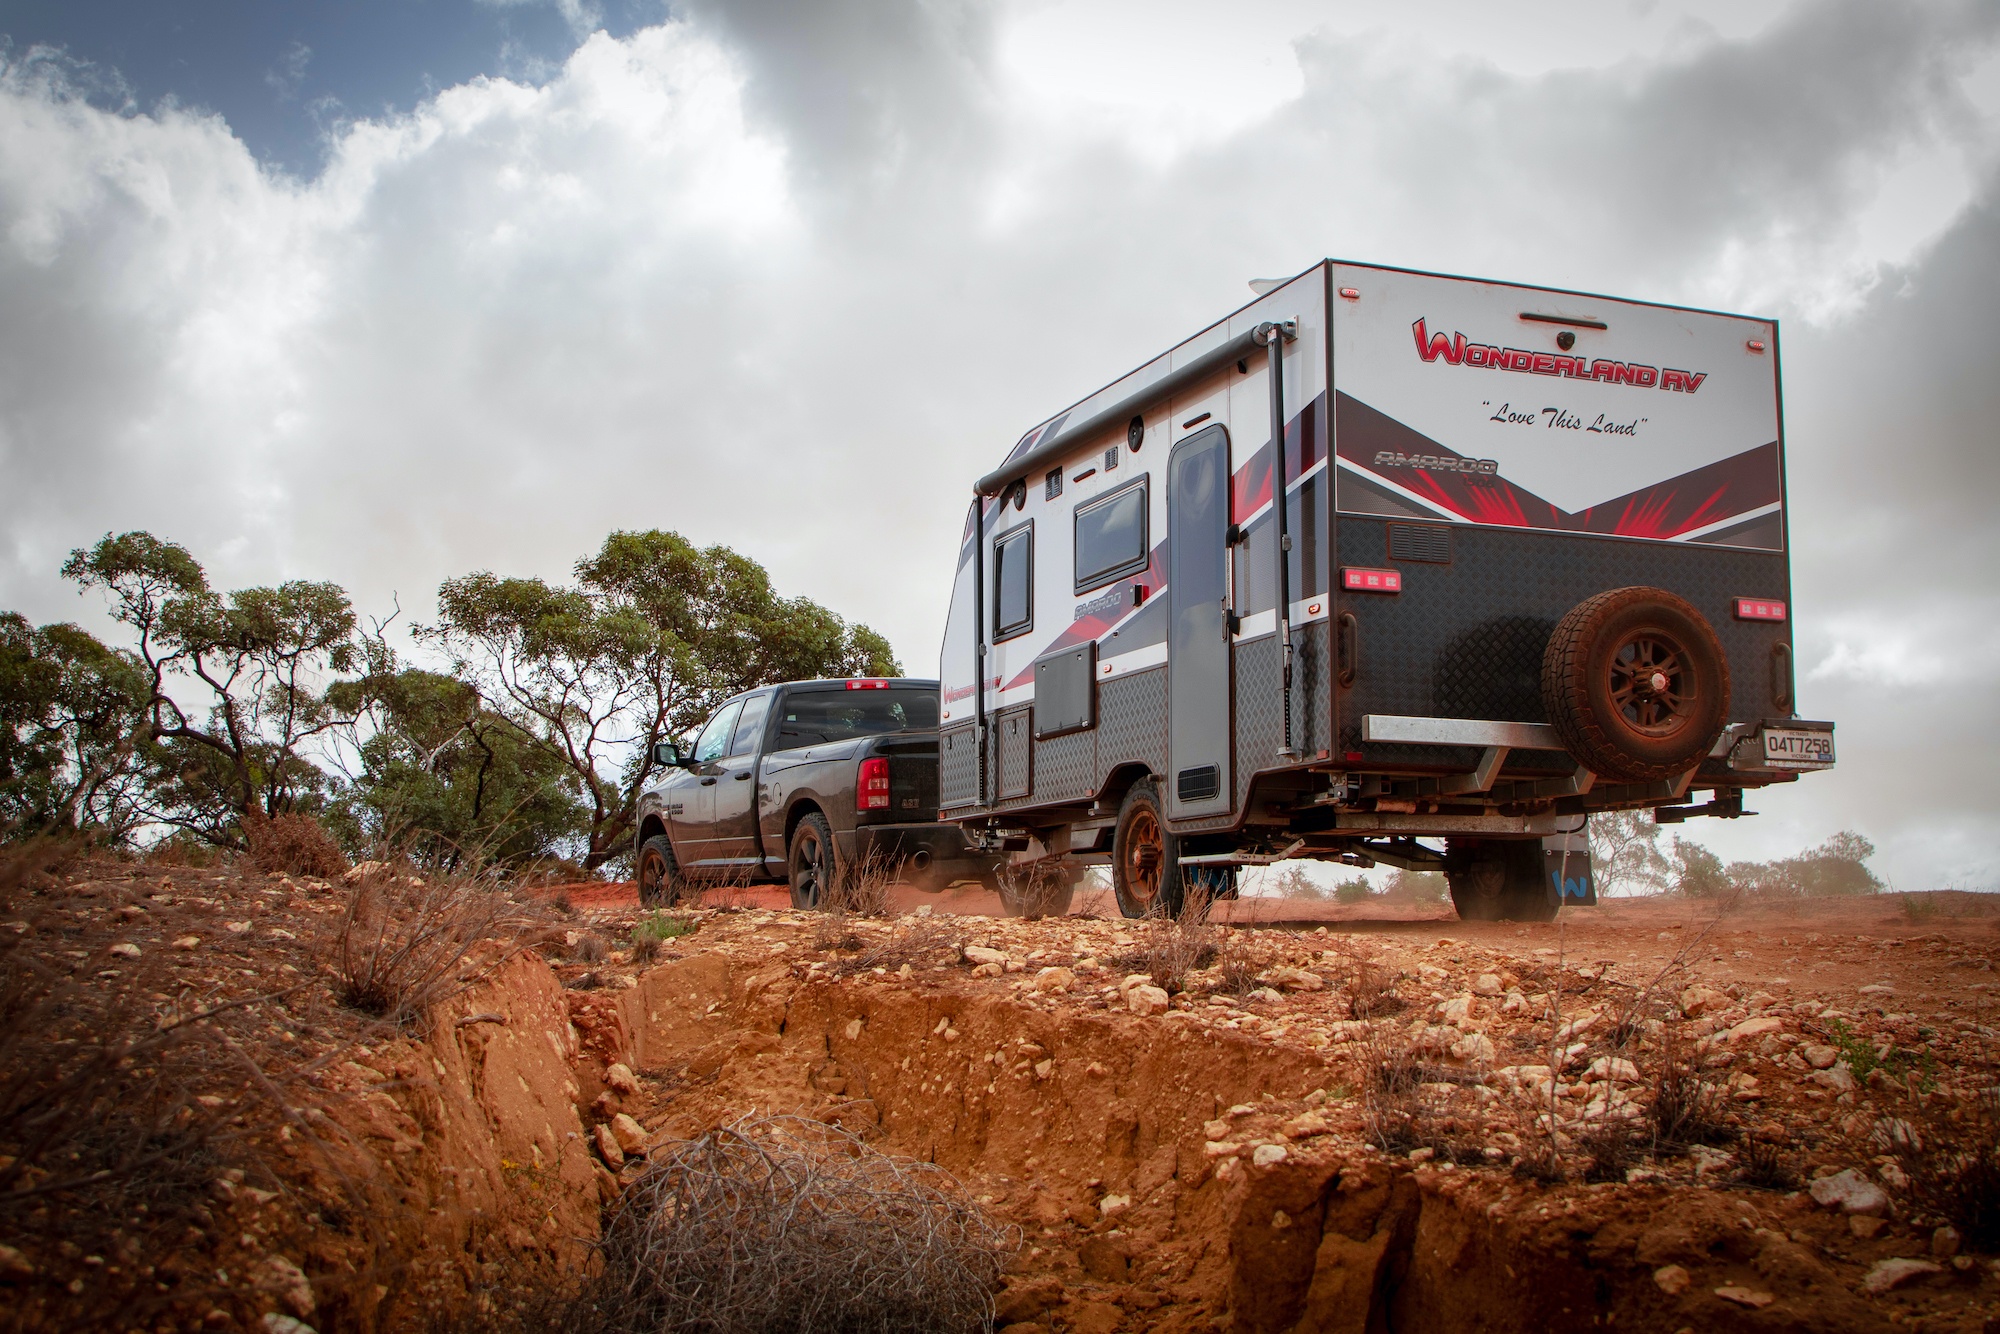 AL-KO Tough Tested Wonderland RV Caravan Review